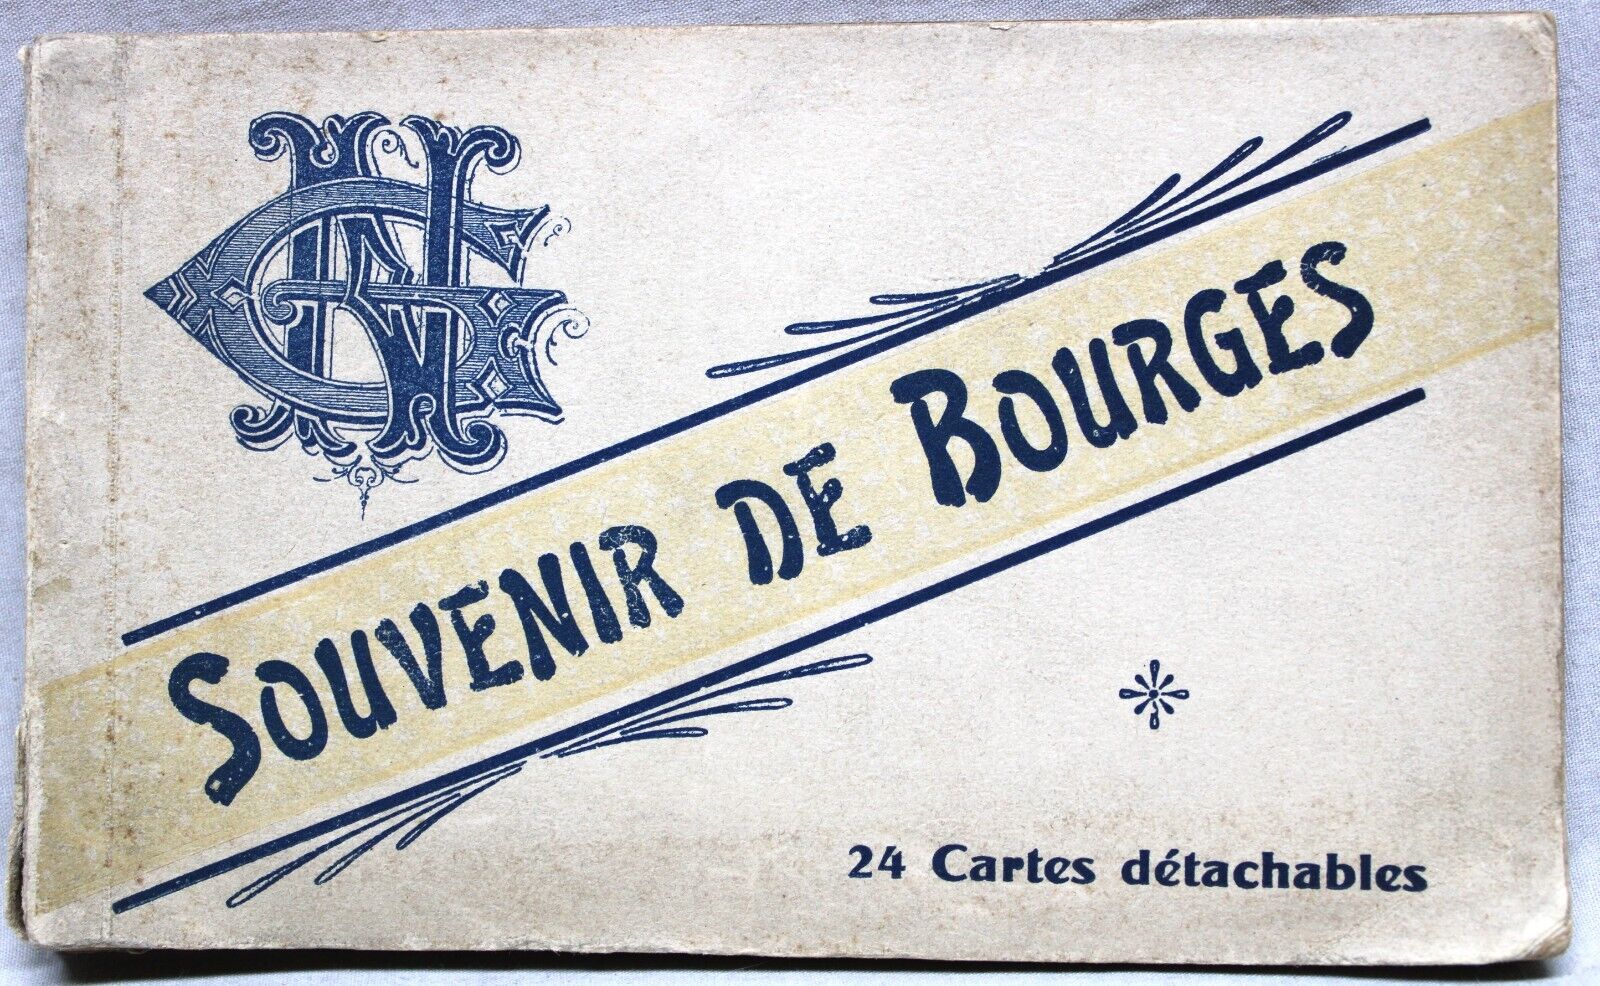 BOURGES FRANCE SOUVENIR POSTCARD ALBUM OF 20 PHOTO VIEWS 1910s VINTAGE